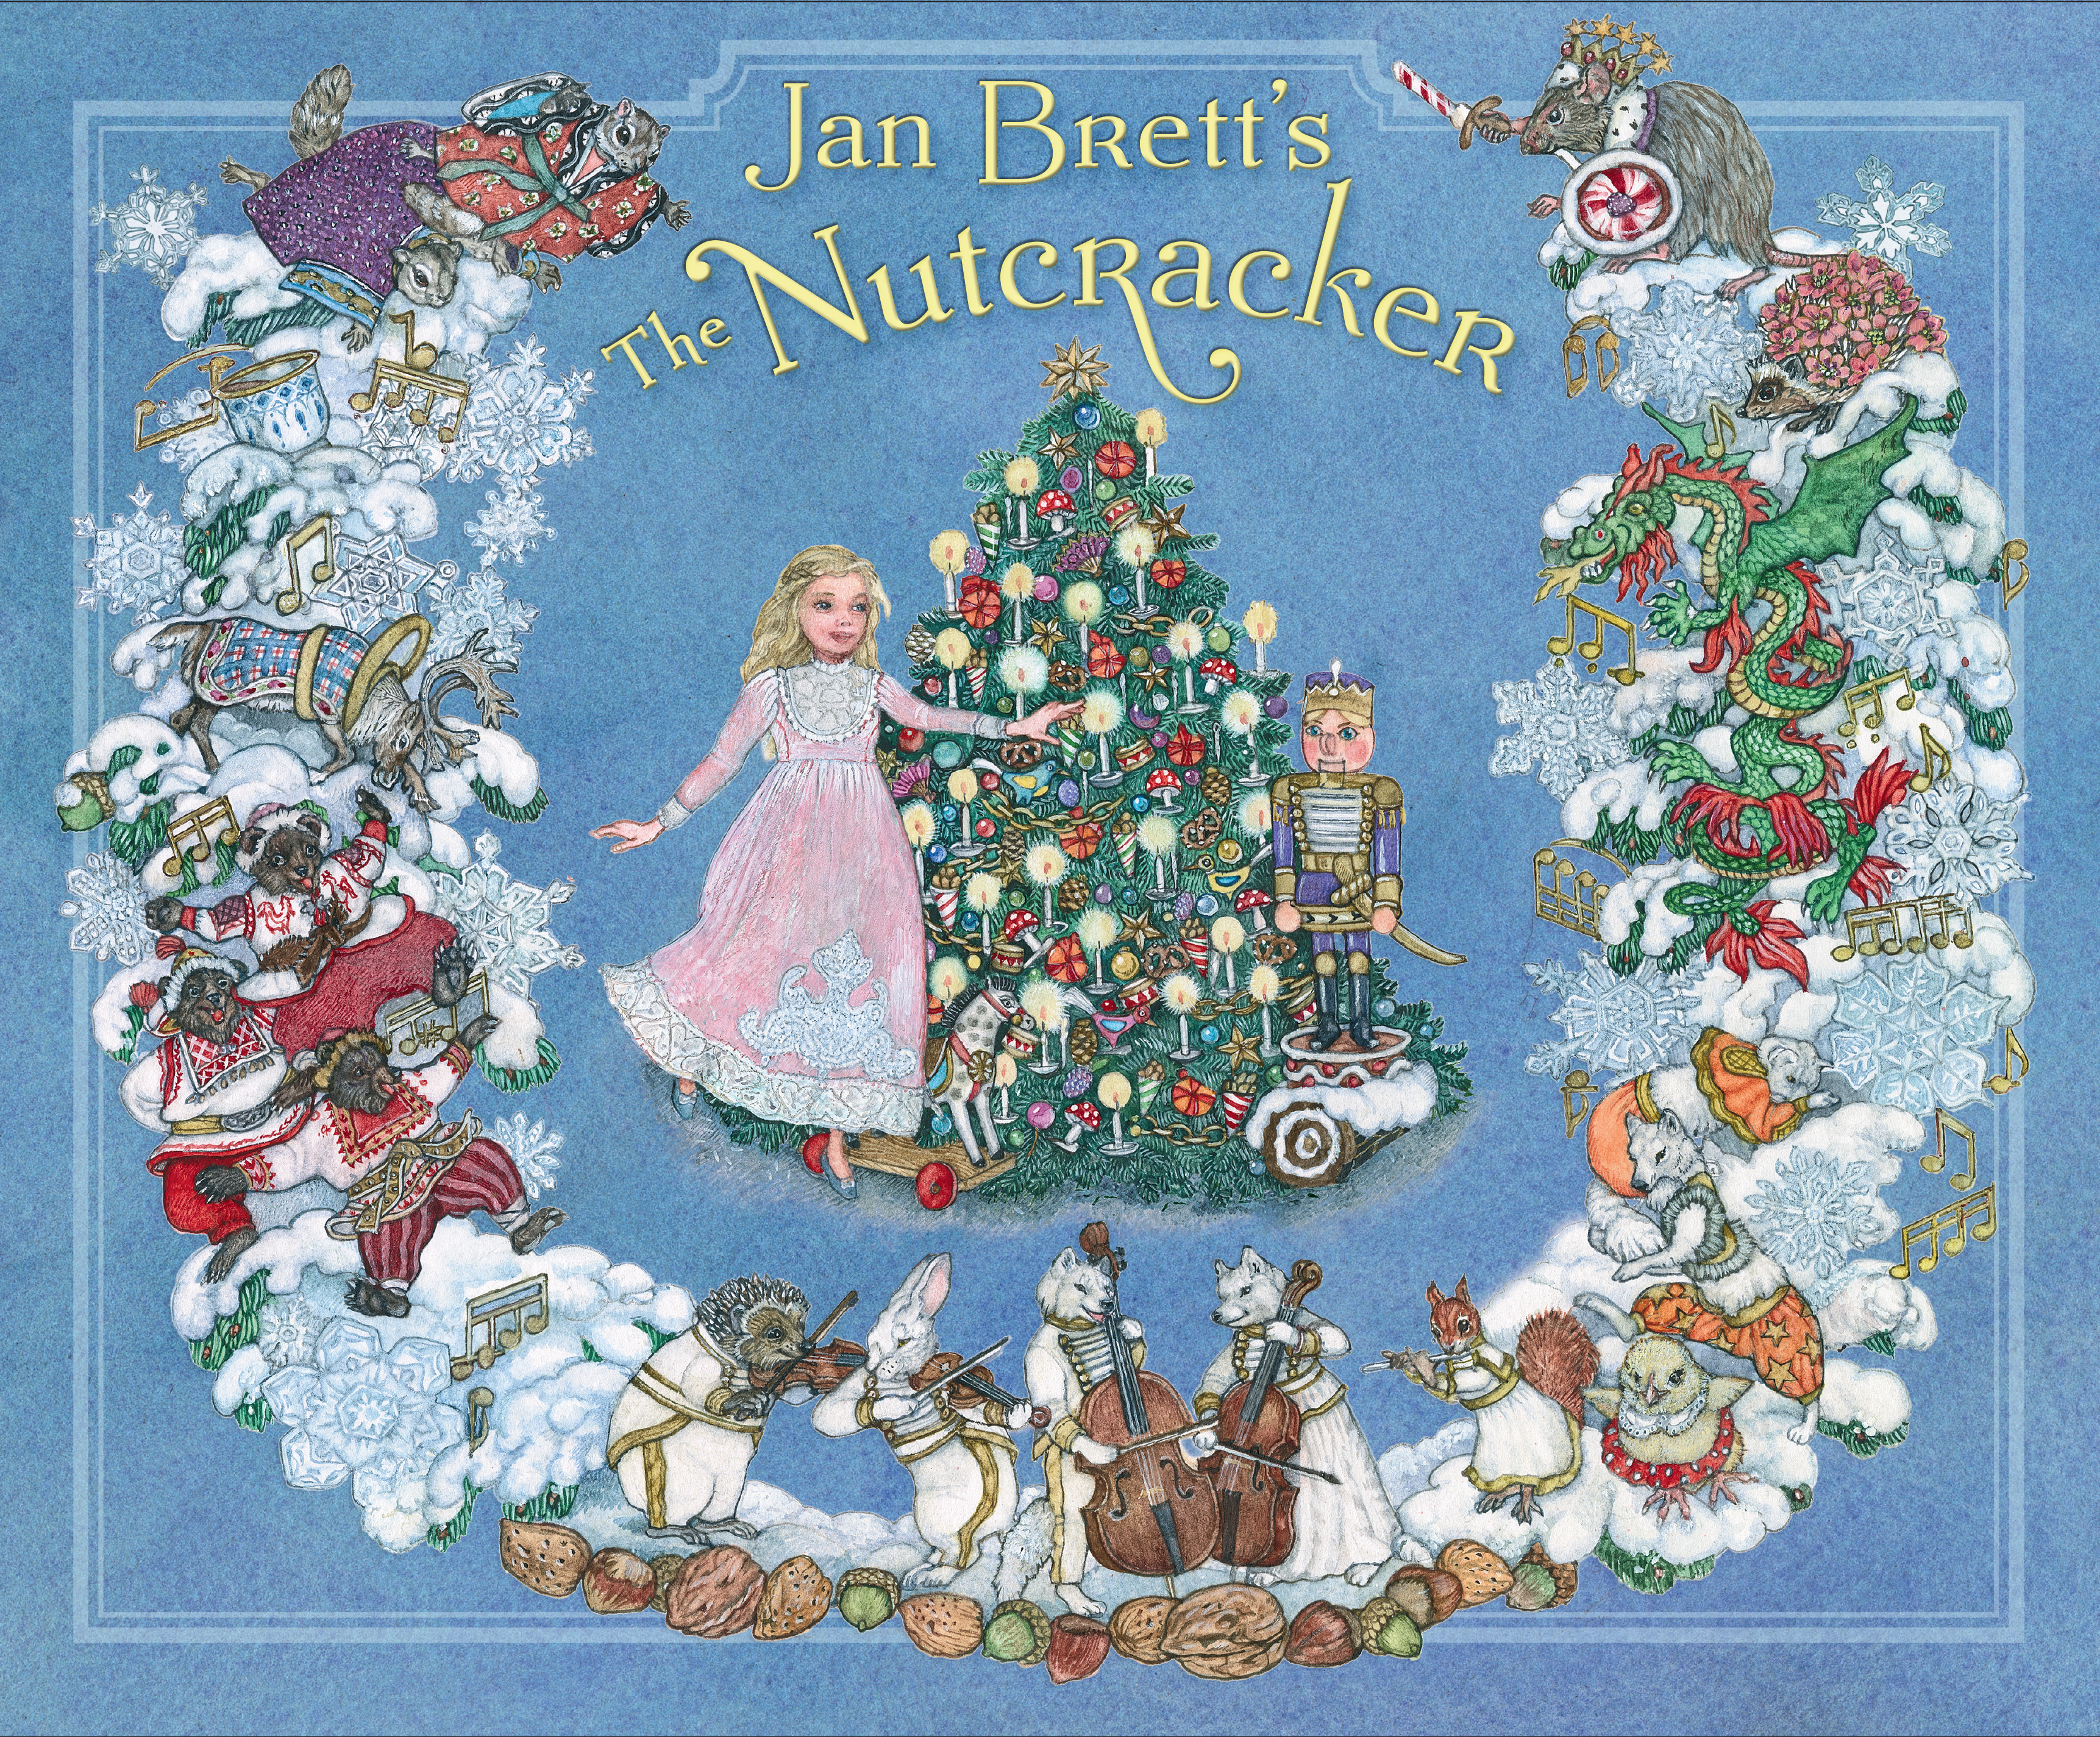 "Jan Brett's The Nutcracker" releases on Nov. 16.